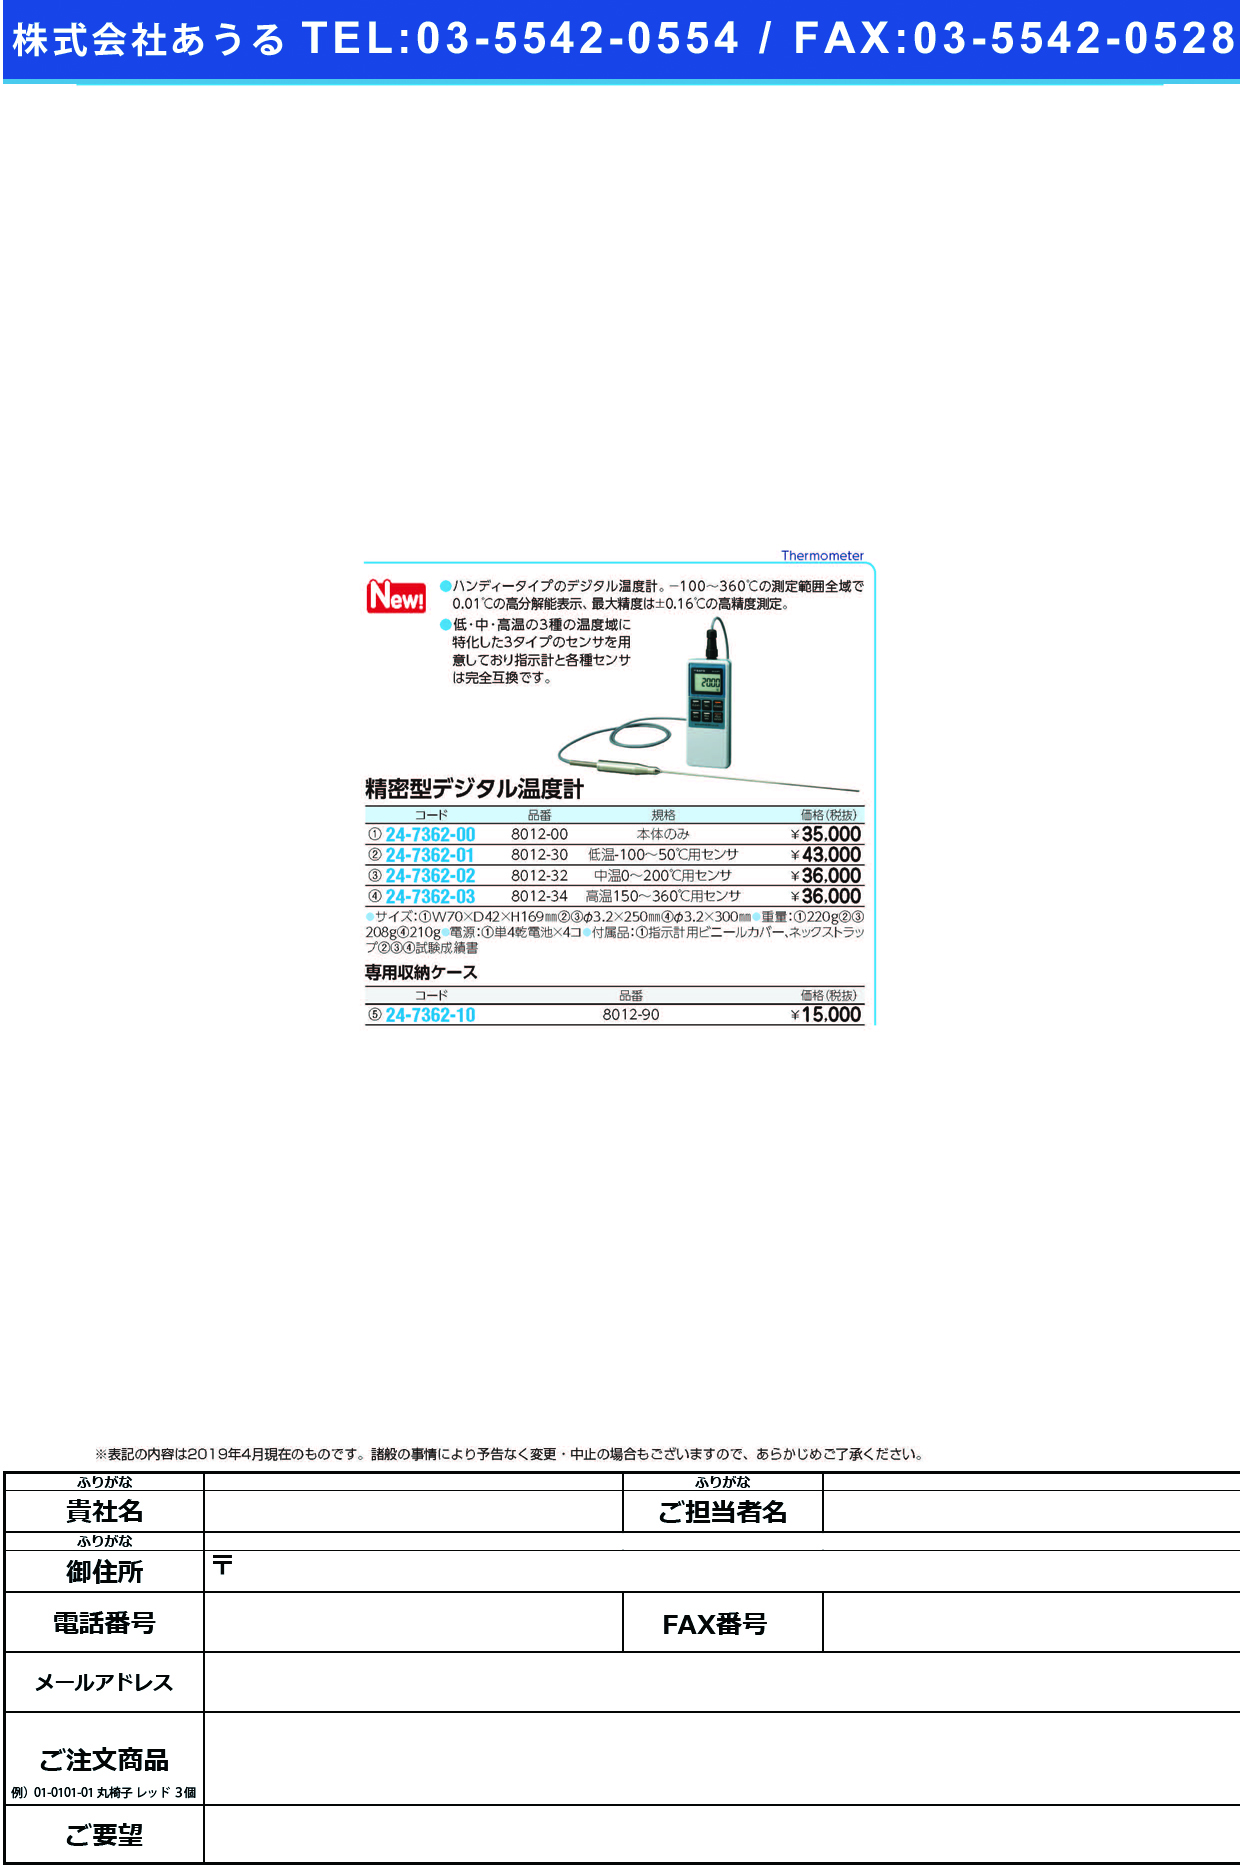 (24-7362-00)精密型デジタル温度計（指示計のみ）SK-810PT ｾｲﾐﾂｶﾞﾀﾃﾞｼﾞﾀﾙｵﾝﾄﾞｹｲ(佐藤計量器製作所)【1台単位】【2019年カタログ商品】